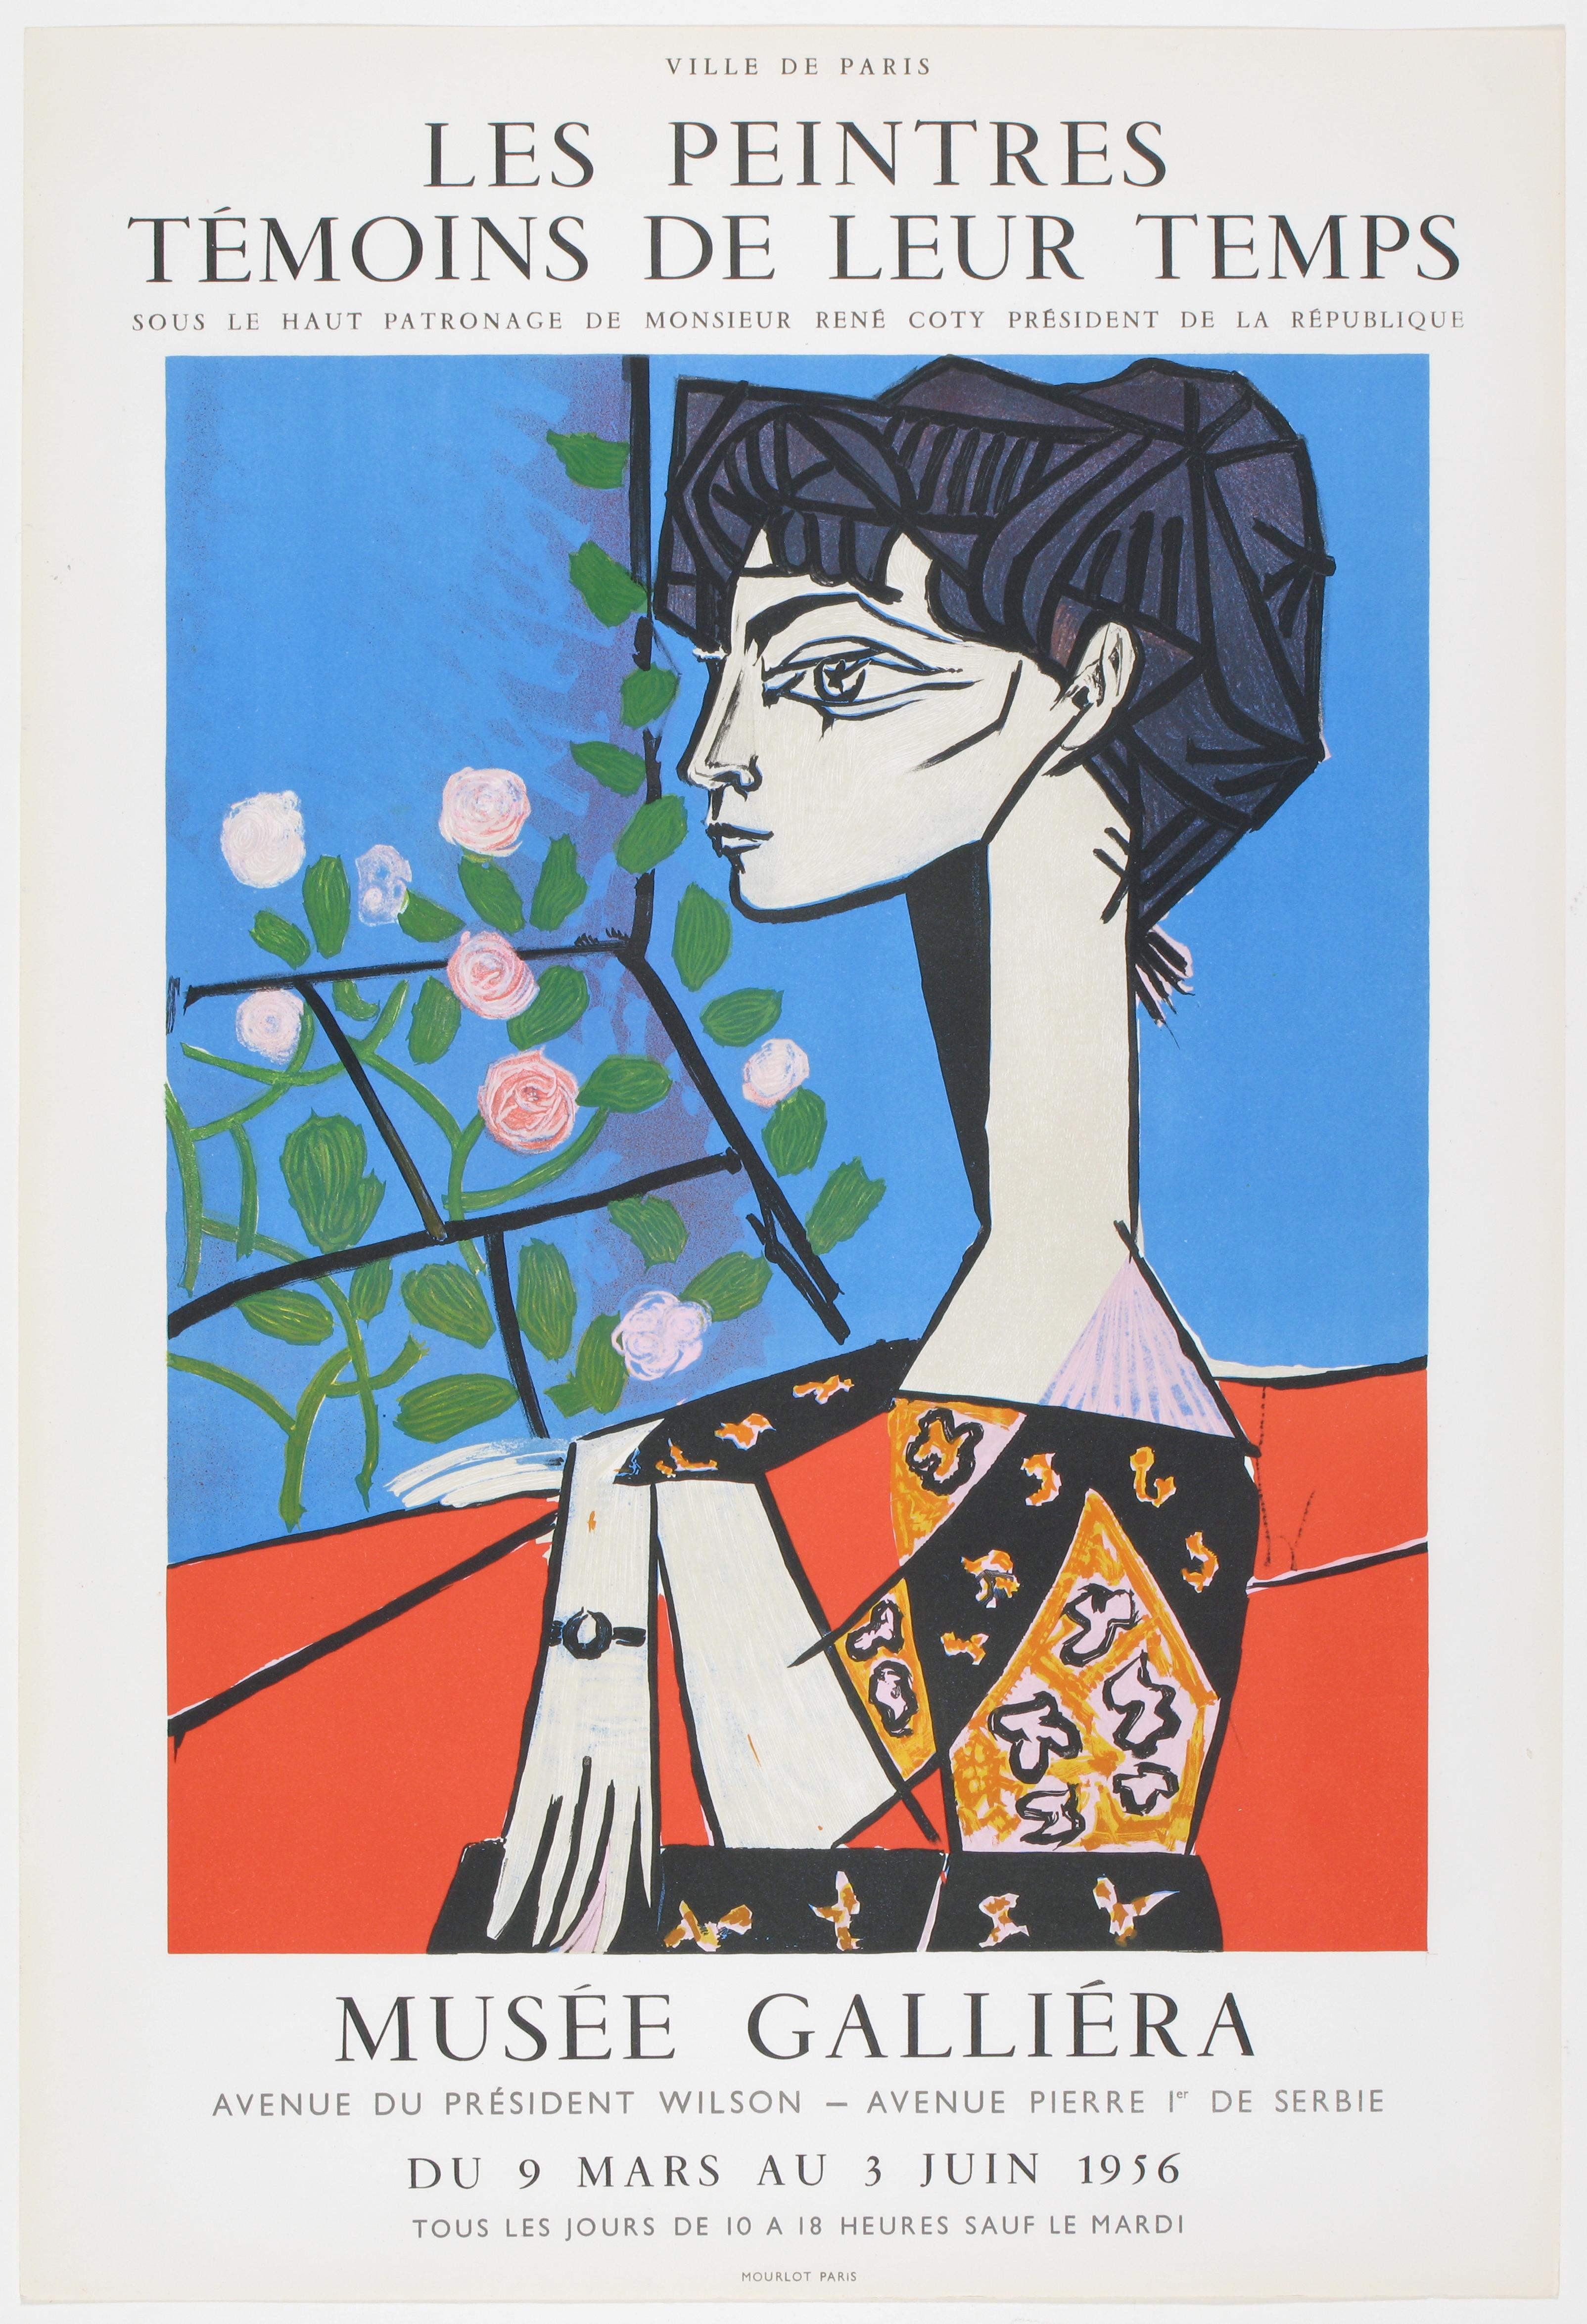 Jacqueline avec Fleurs - Print by Pablo Picasso